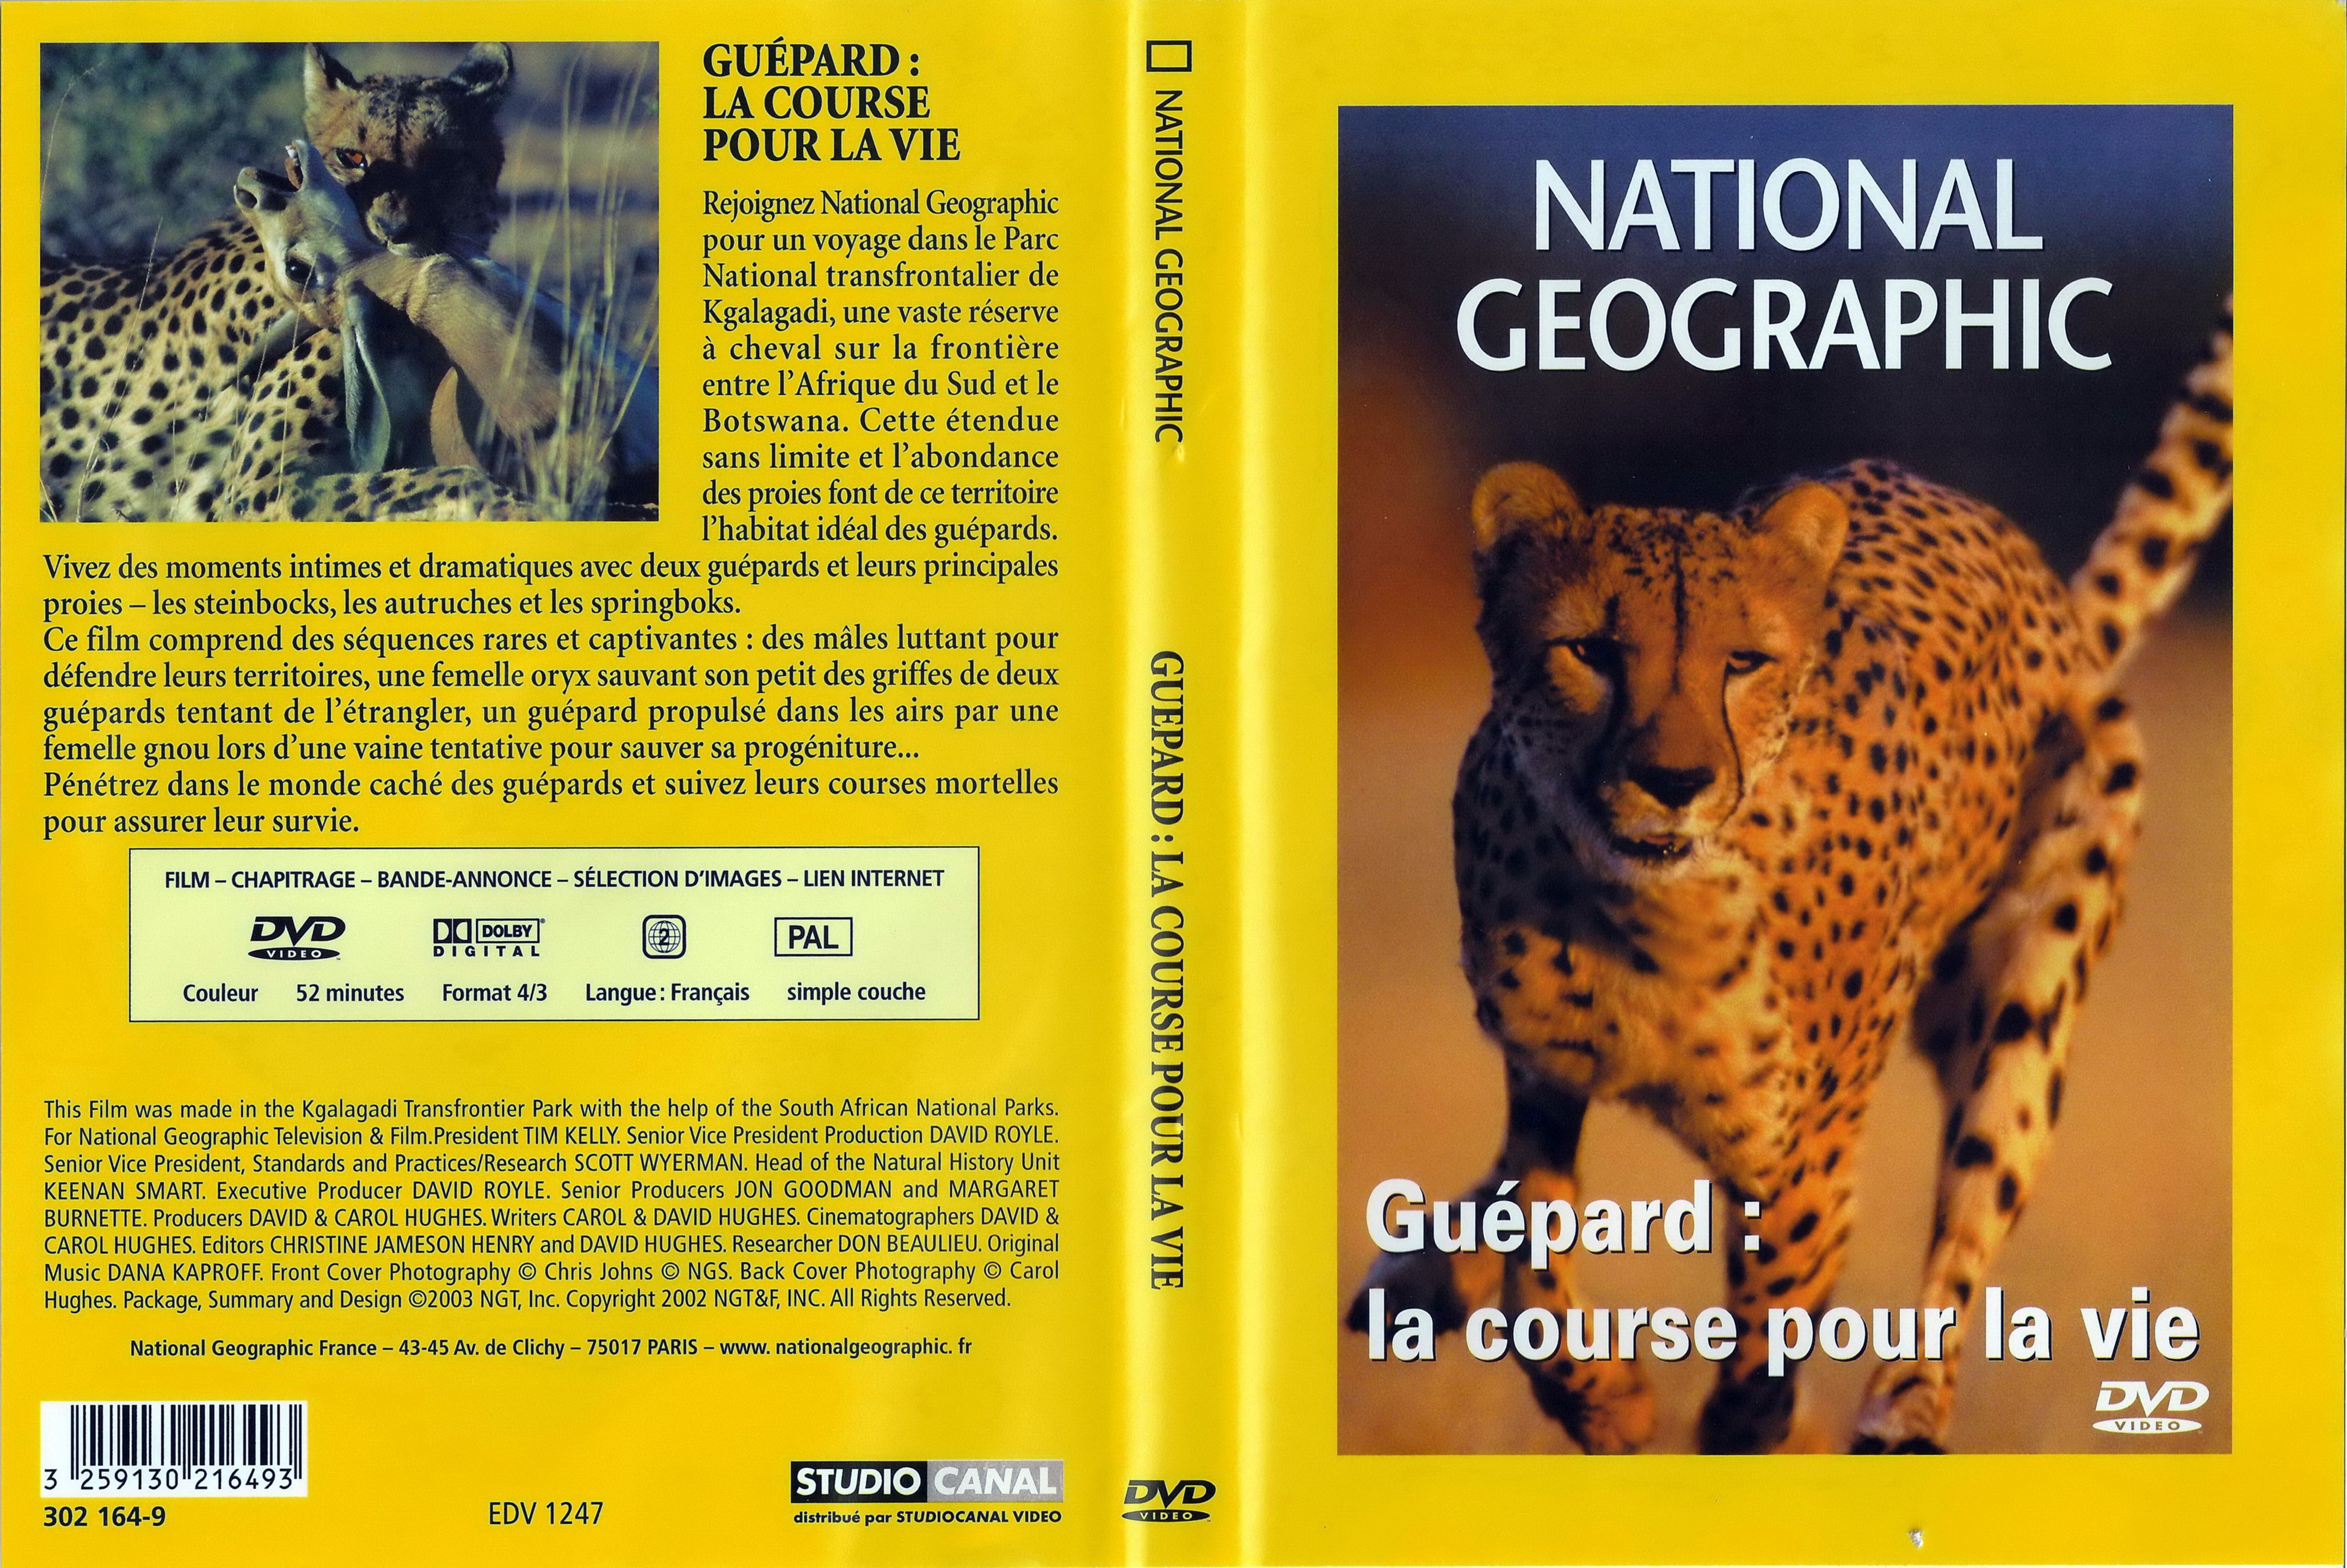 Jaquette DVD National geographic - Gupard la cours pour la vie